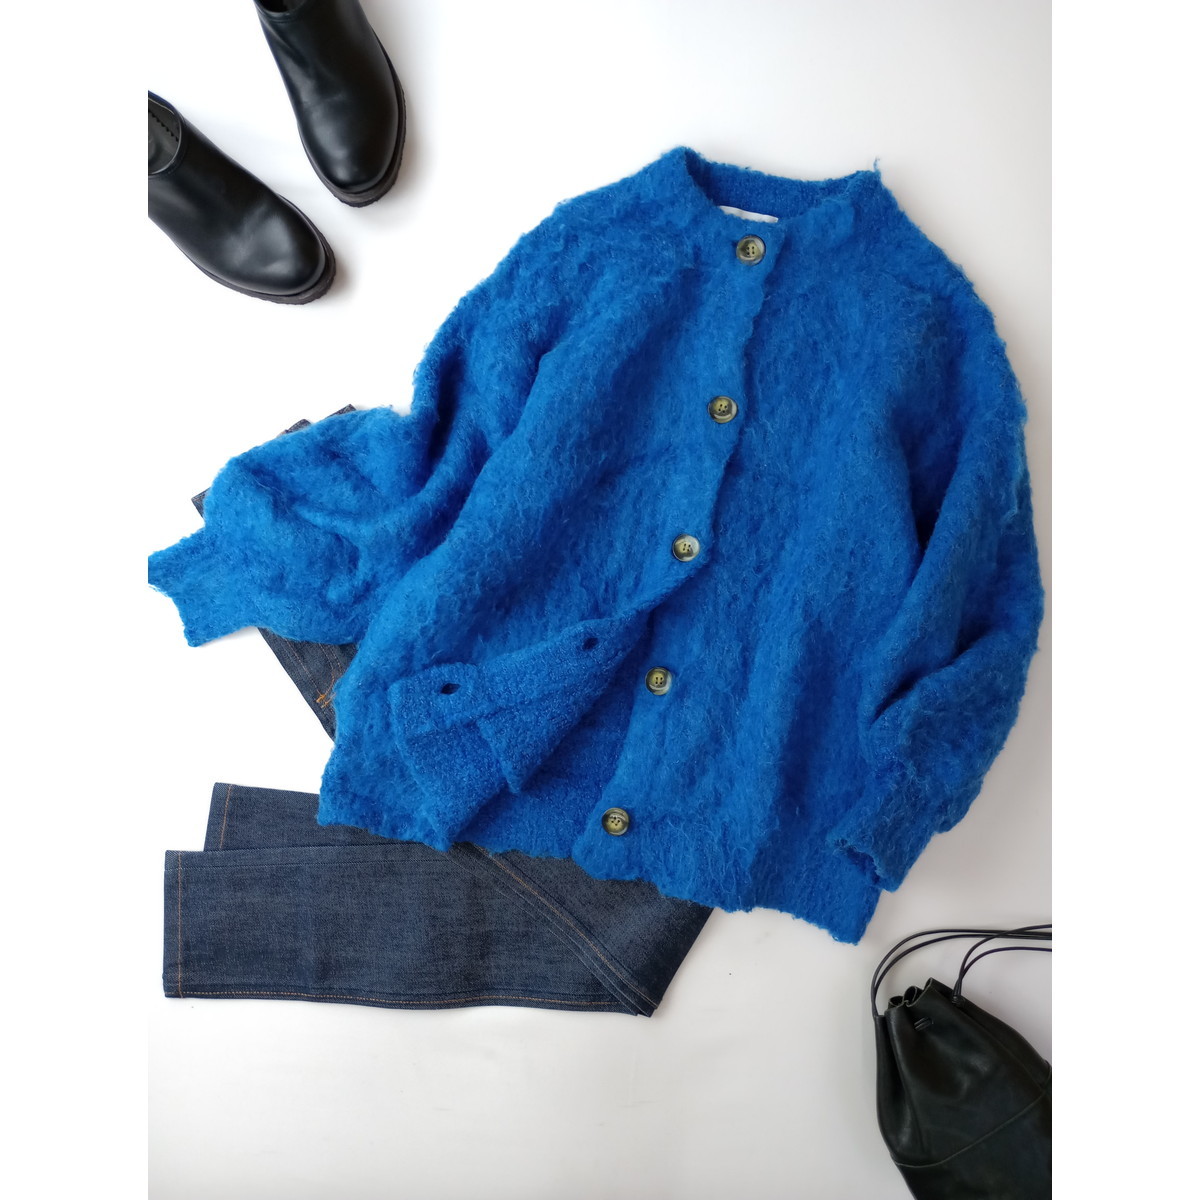 22AW Simplicite シンプリシテェ 冬の装いを華やかに ウール混 ニット カーディガン 羽織 青 ブルー (35S+1120)_画像1